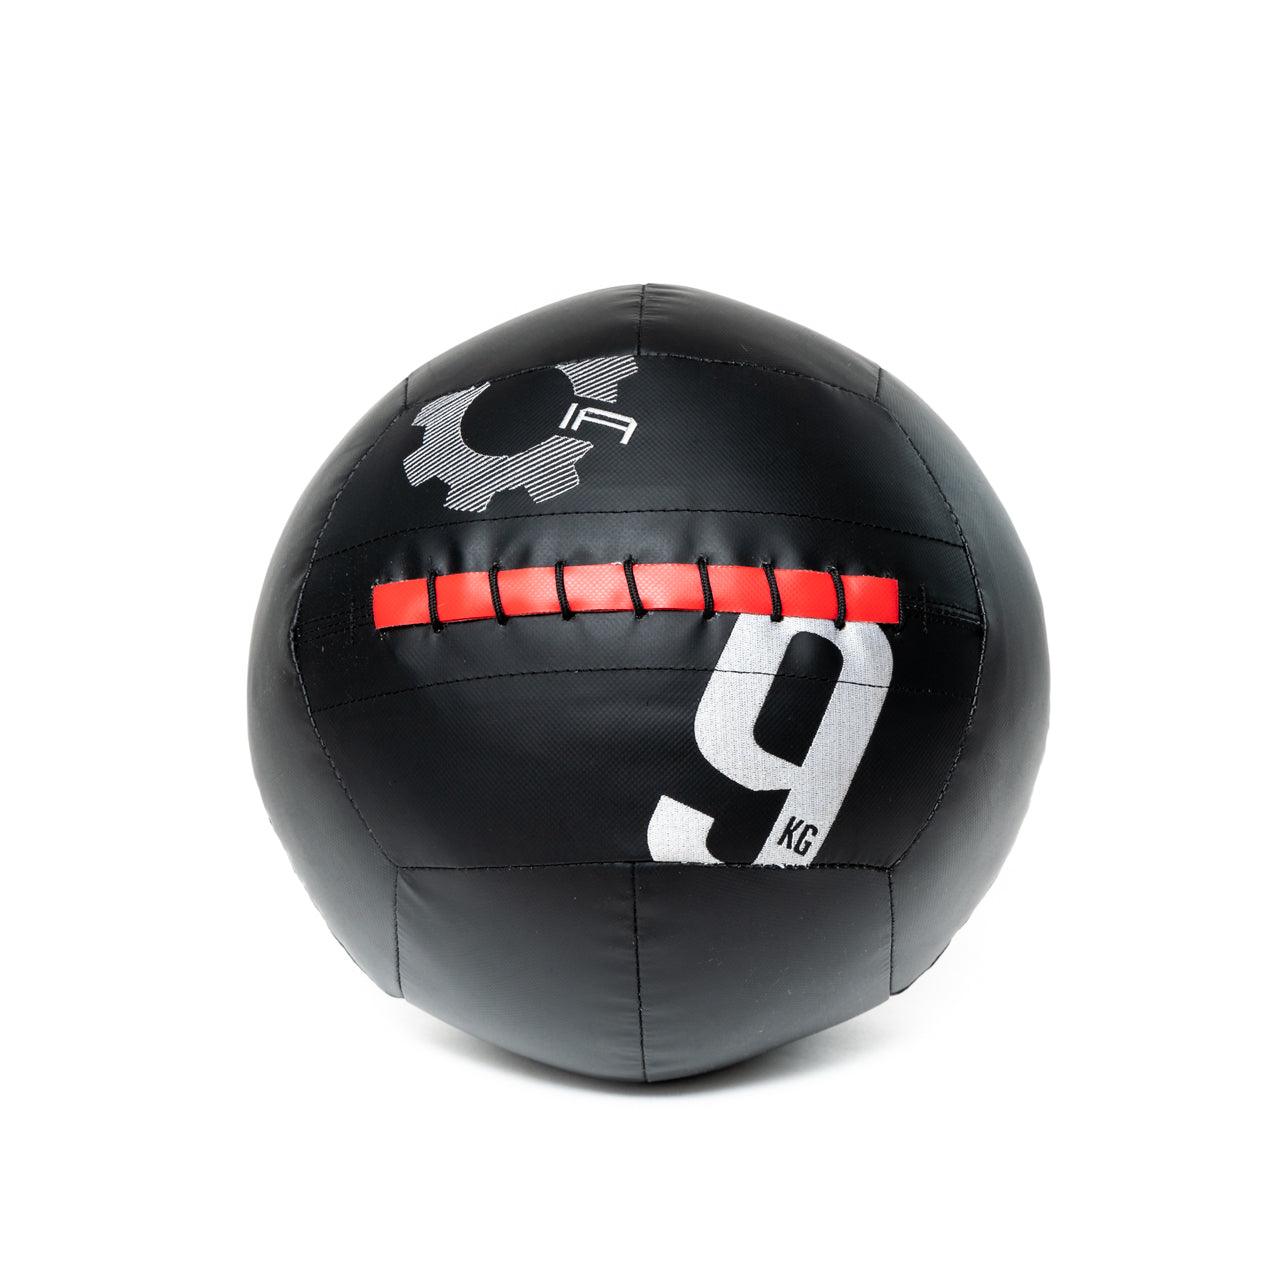 9kg Medicine Ball V3.0 5pack - Industrial Athletic